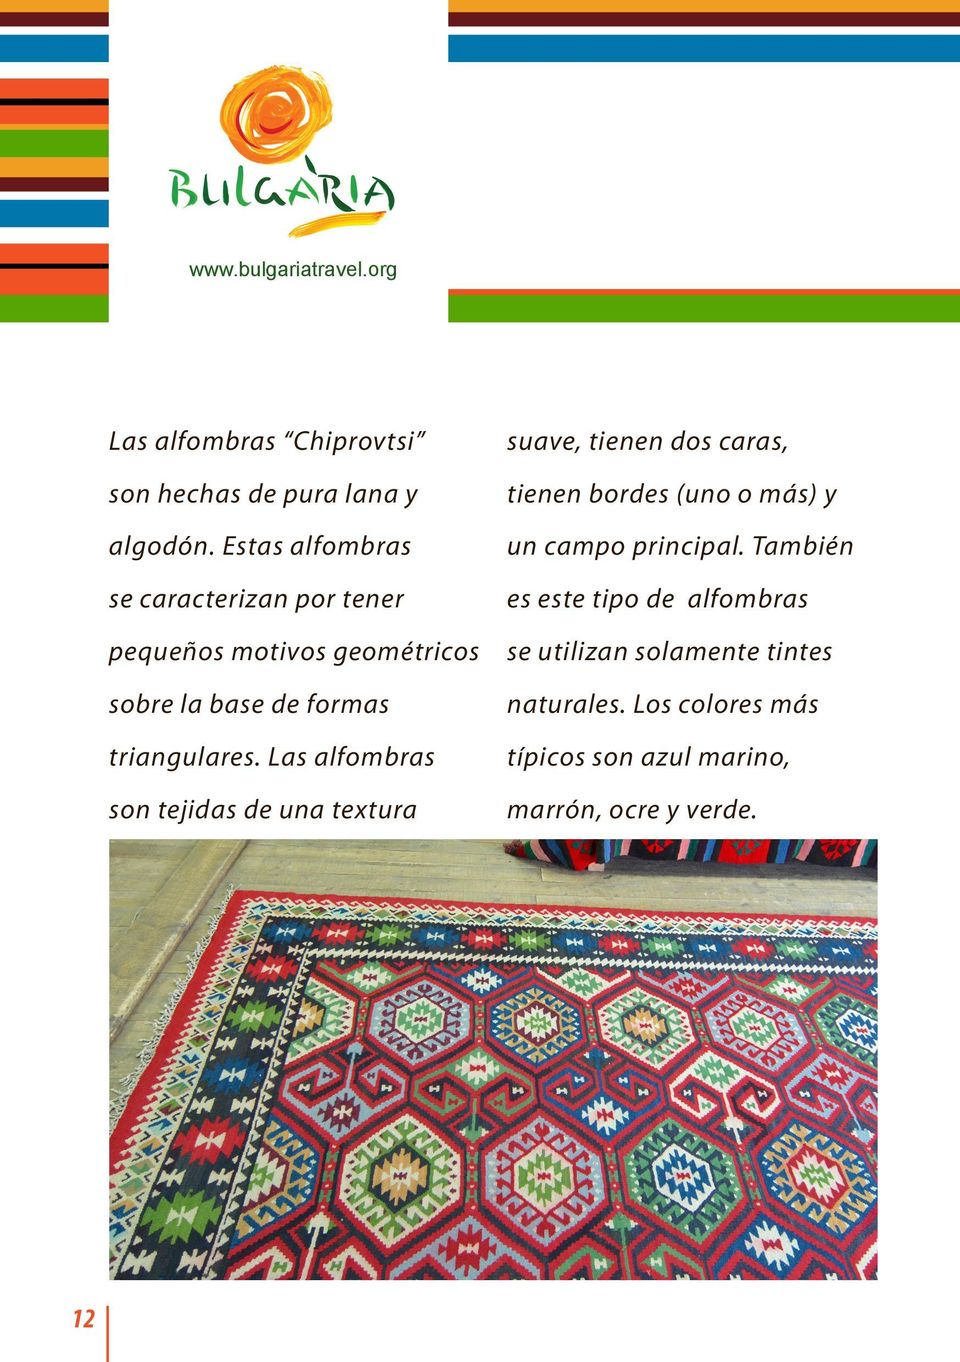 Las alfombras son tejidas de una textura suave, tienen dos caras, tienen bordes (uno o más) y un campo